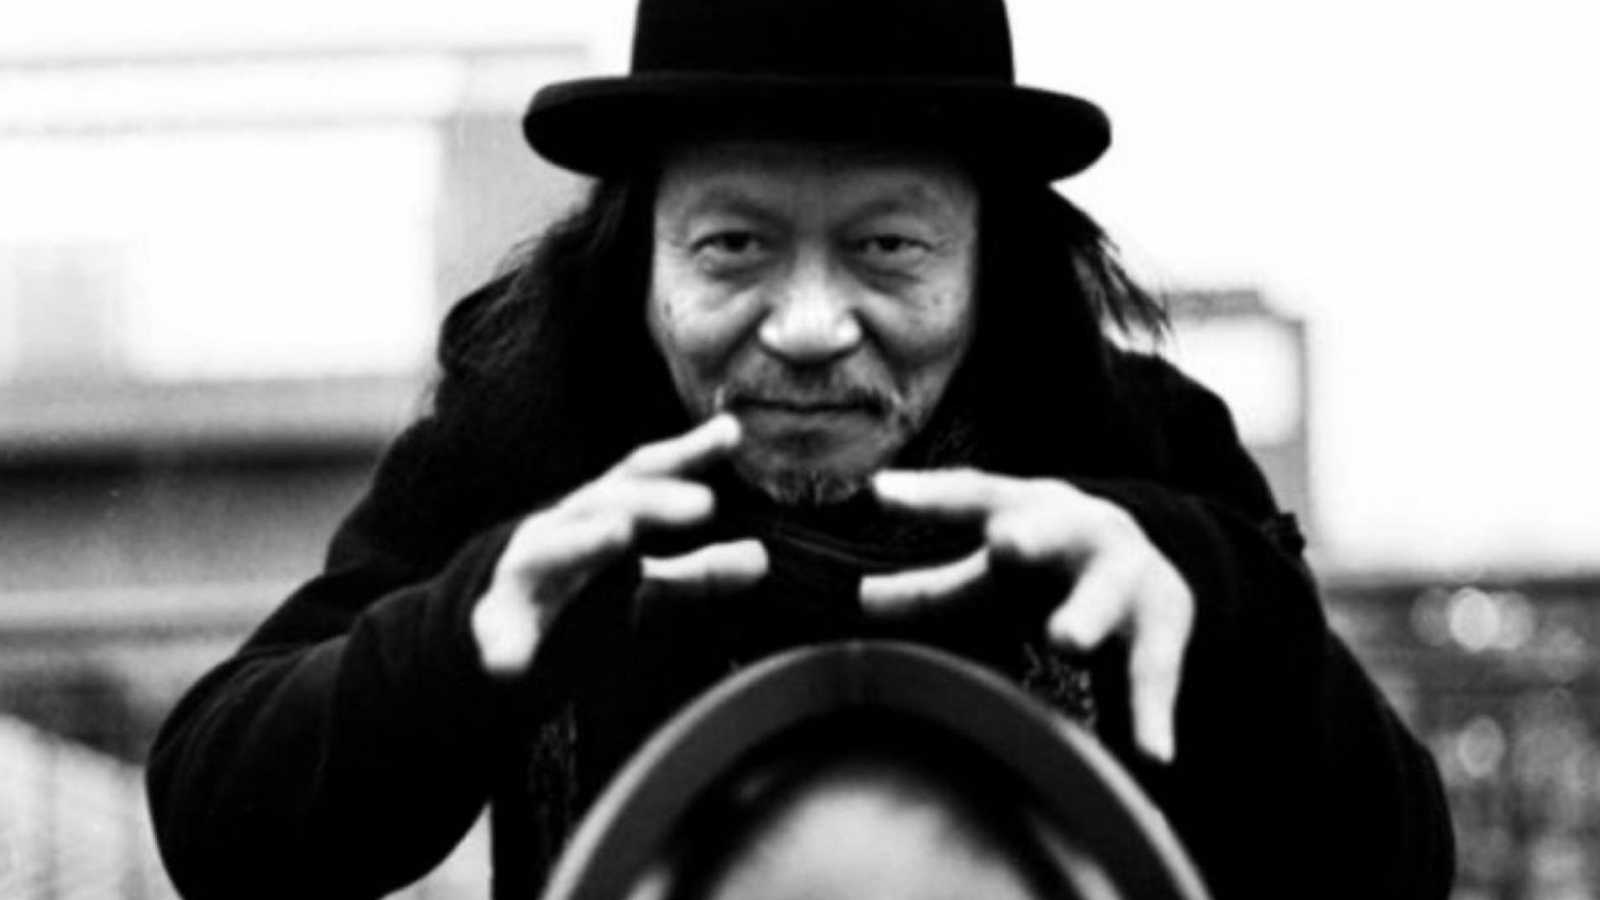 Rocklaulaja Damo Suzuki, 74, on kuollut – Grimm Grimm, Bo Ningen, Elijah Wood ja muut julkaisivat osanottonsa © Damo Suzuki. All rights reserved.